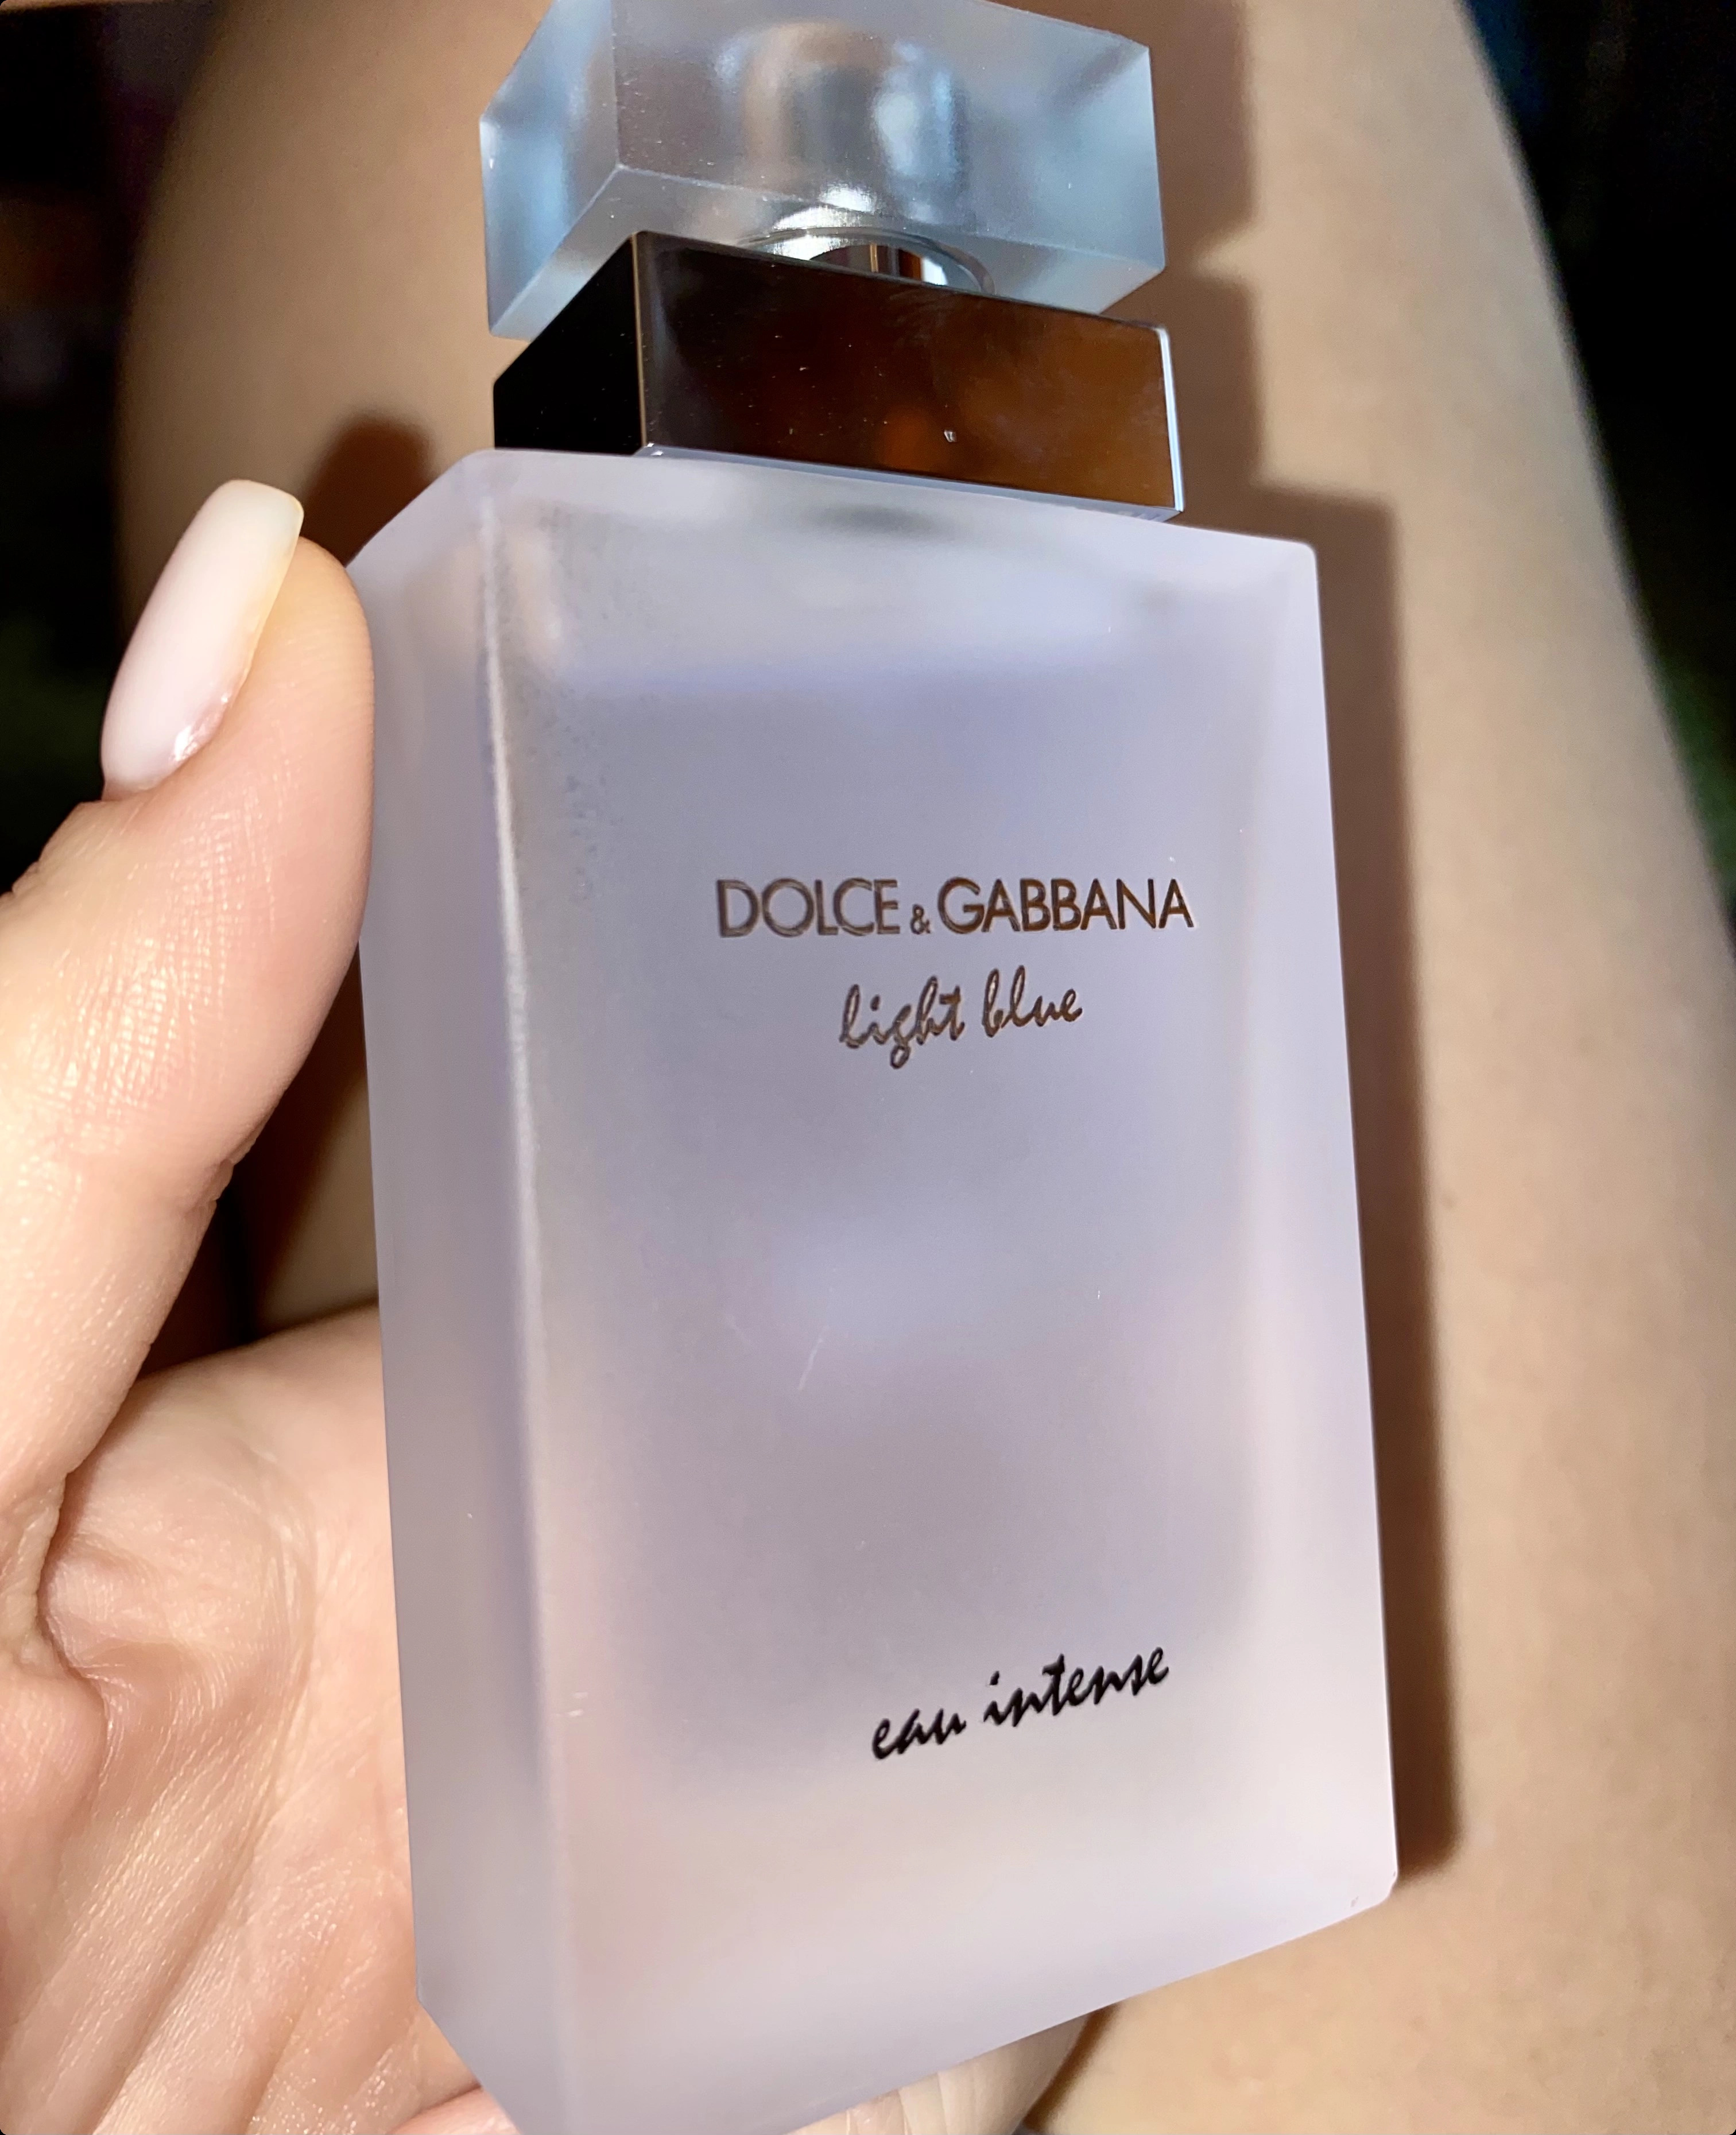 Dolce & Gabbana Light Blue Eau Intense Парфюмерная вода 25 мл для женщин